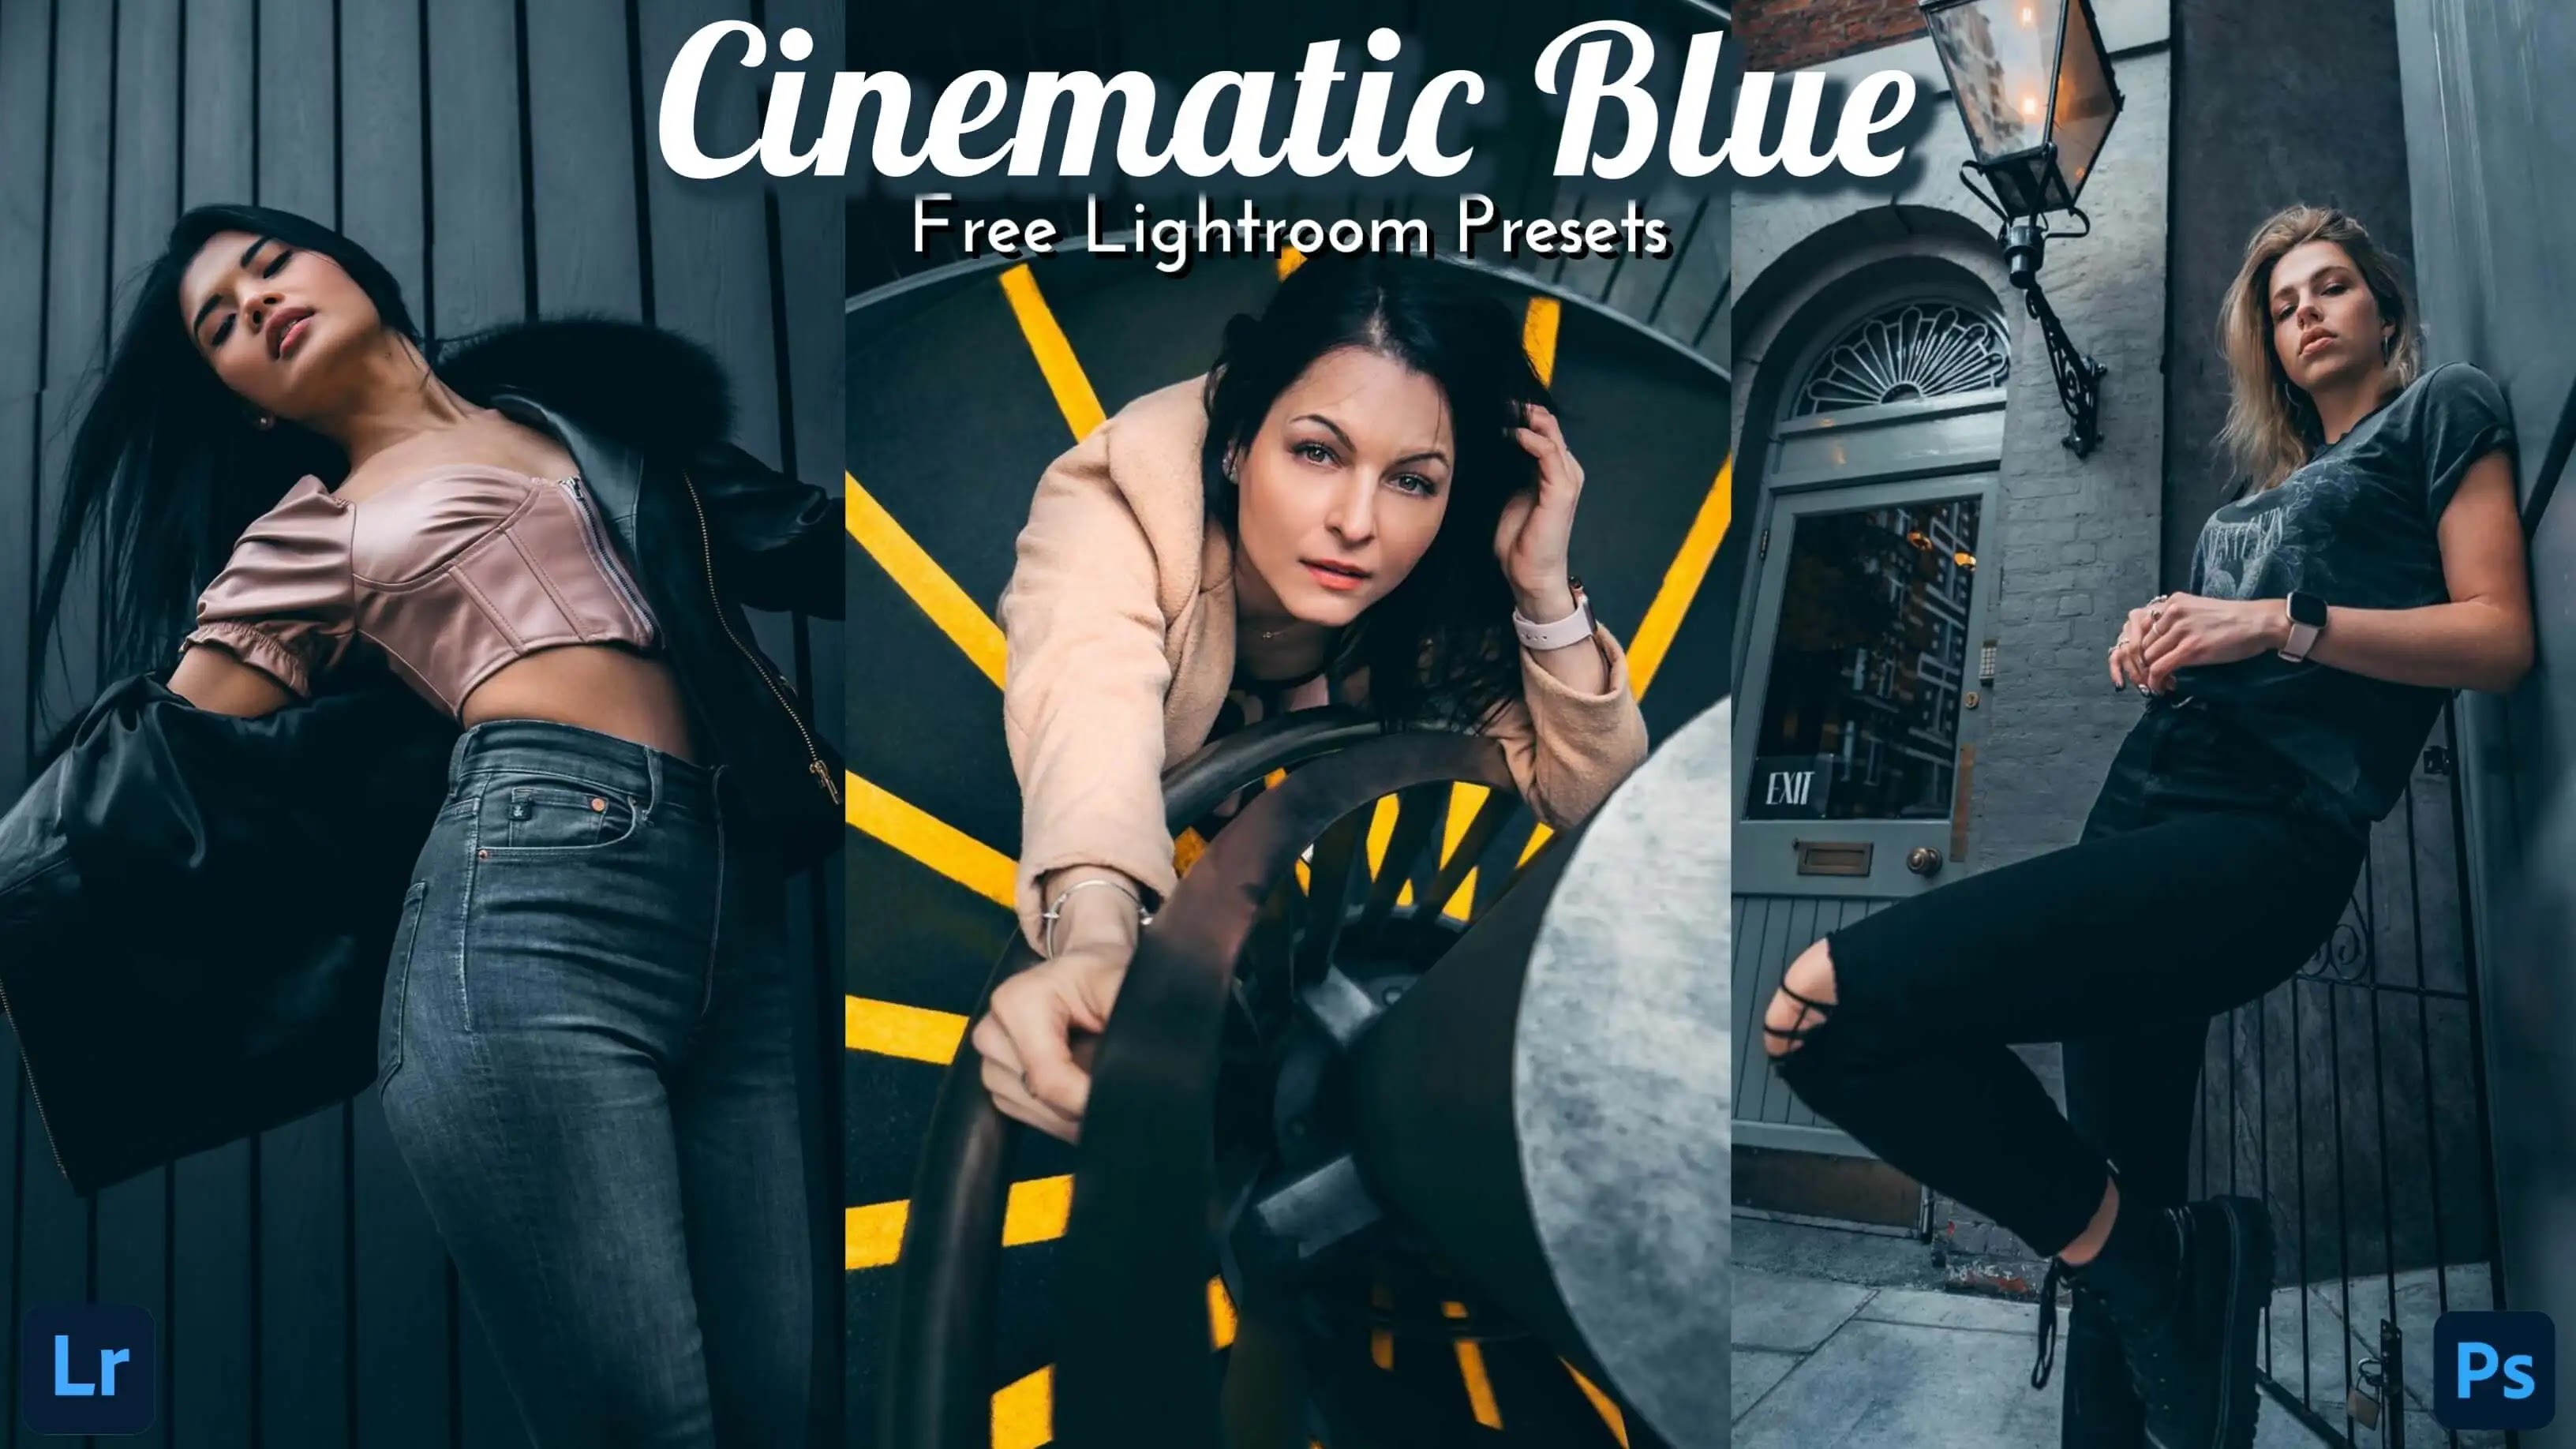 Cinematic Blue Lightroom Presets, Cinematic Lightroom Presets, Cinematic Lightroom Presets Free, Free Lightroom Presets, Free Cinematic Blue Lightroom Presets